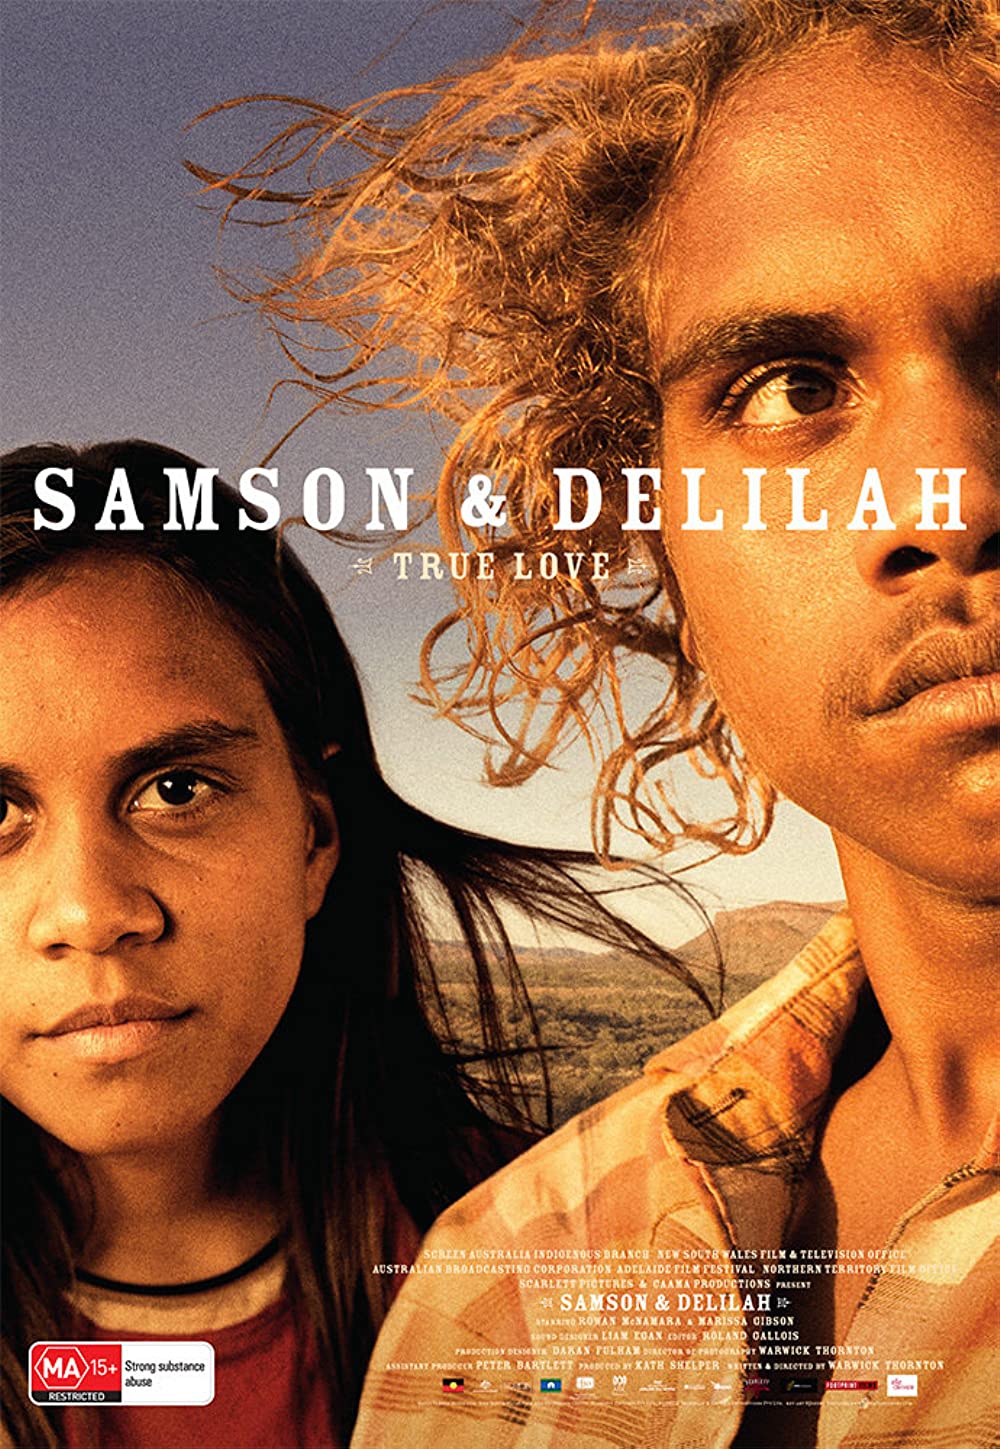 Filmbeschreibung zu Samson & Delilah (OV)